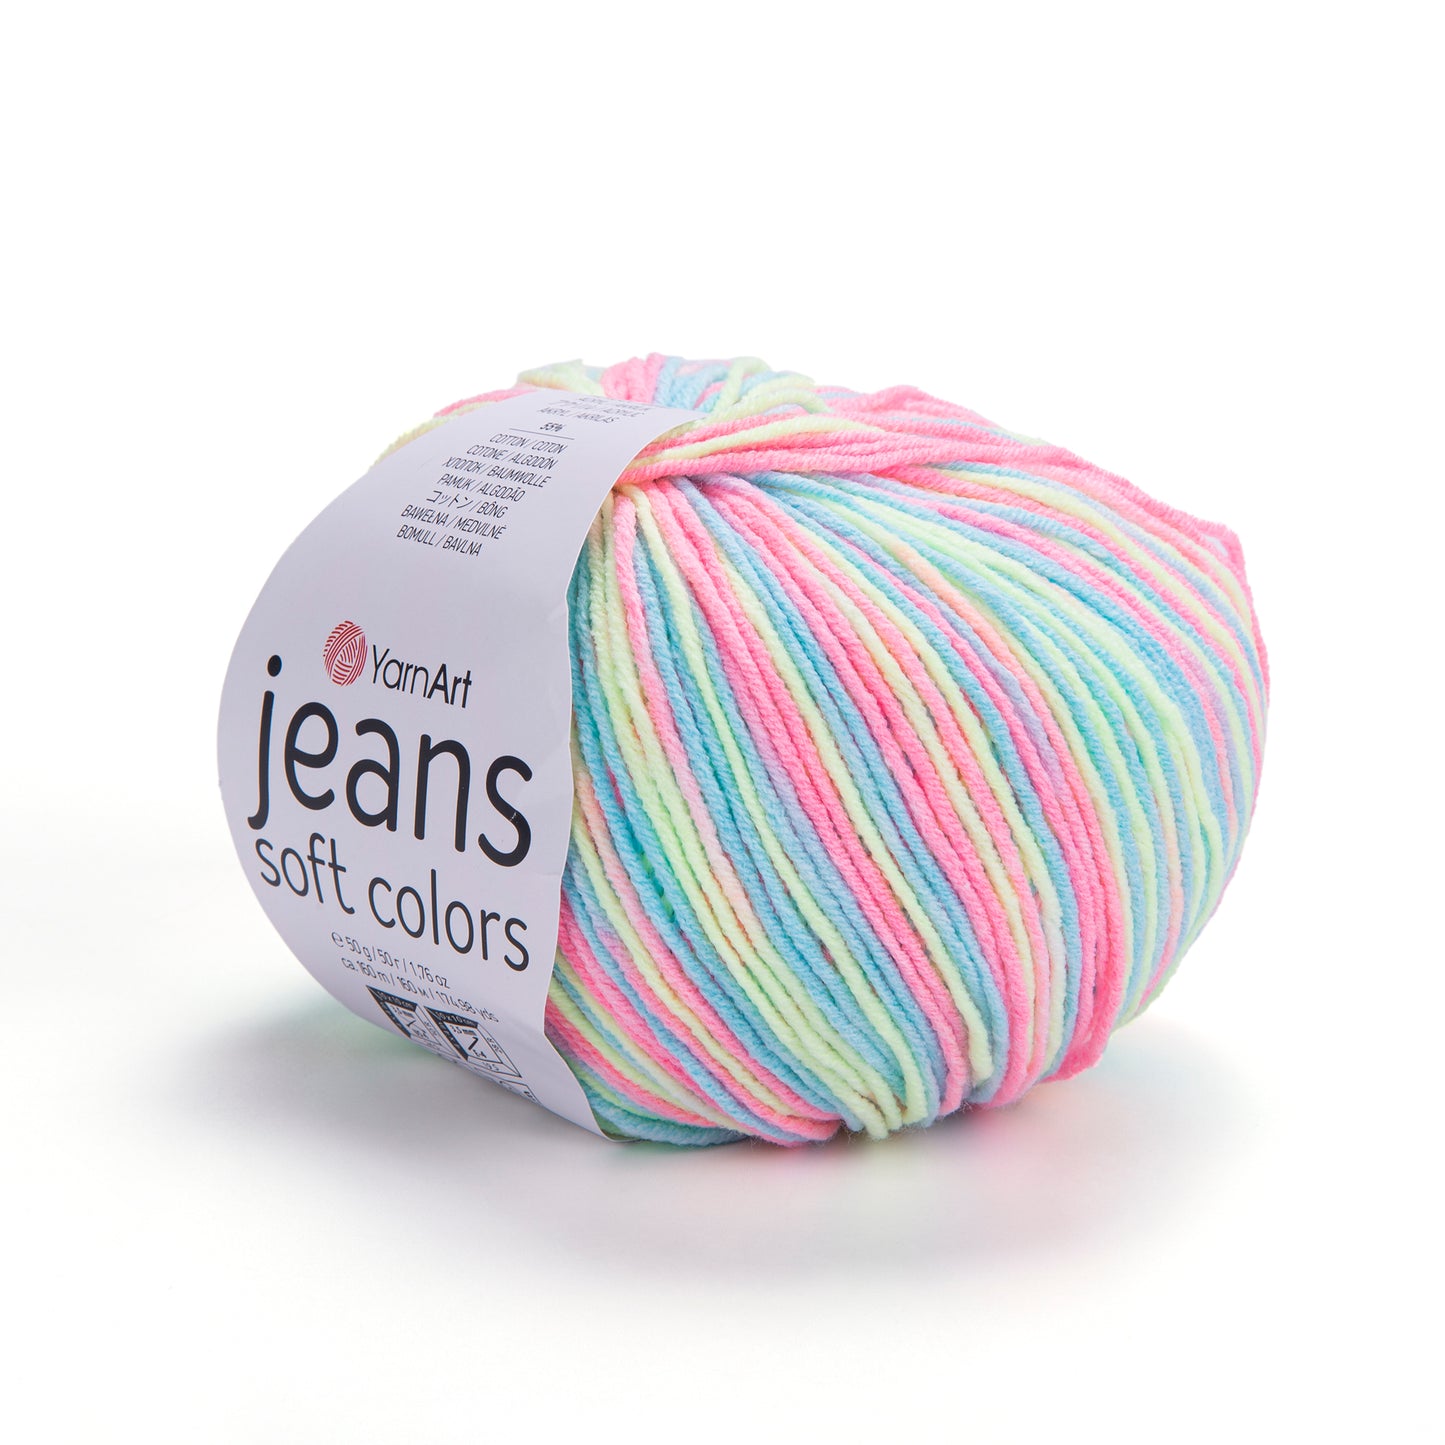 Laine JEANS SOFT COLORS 50g - 55% coton, 45% acrylique